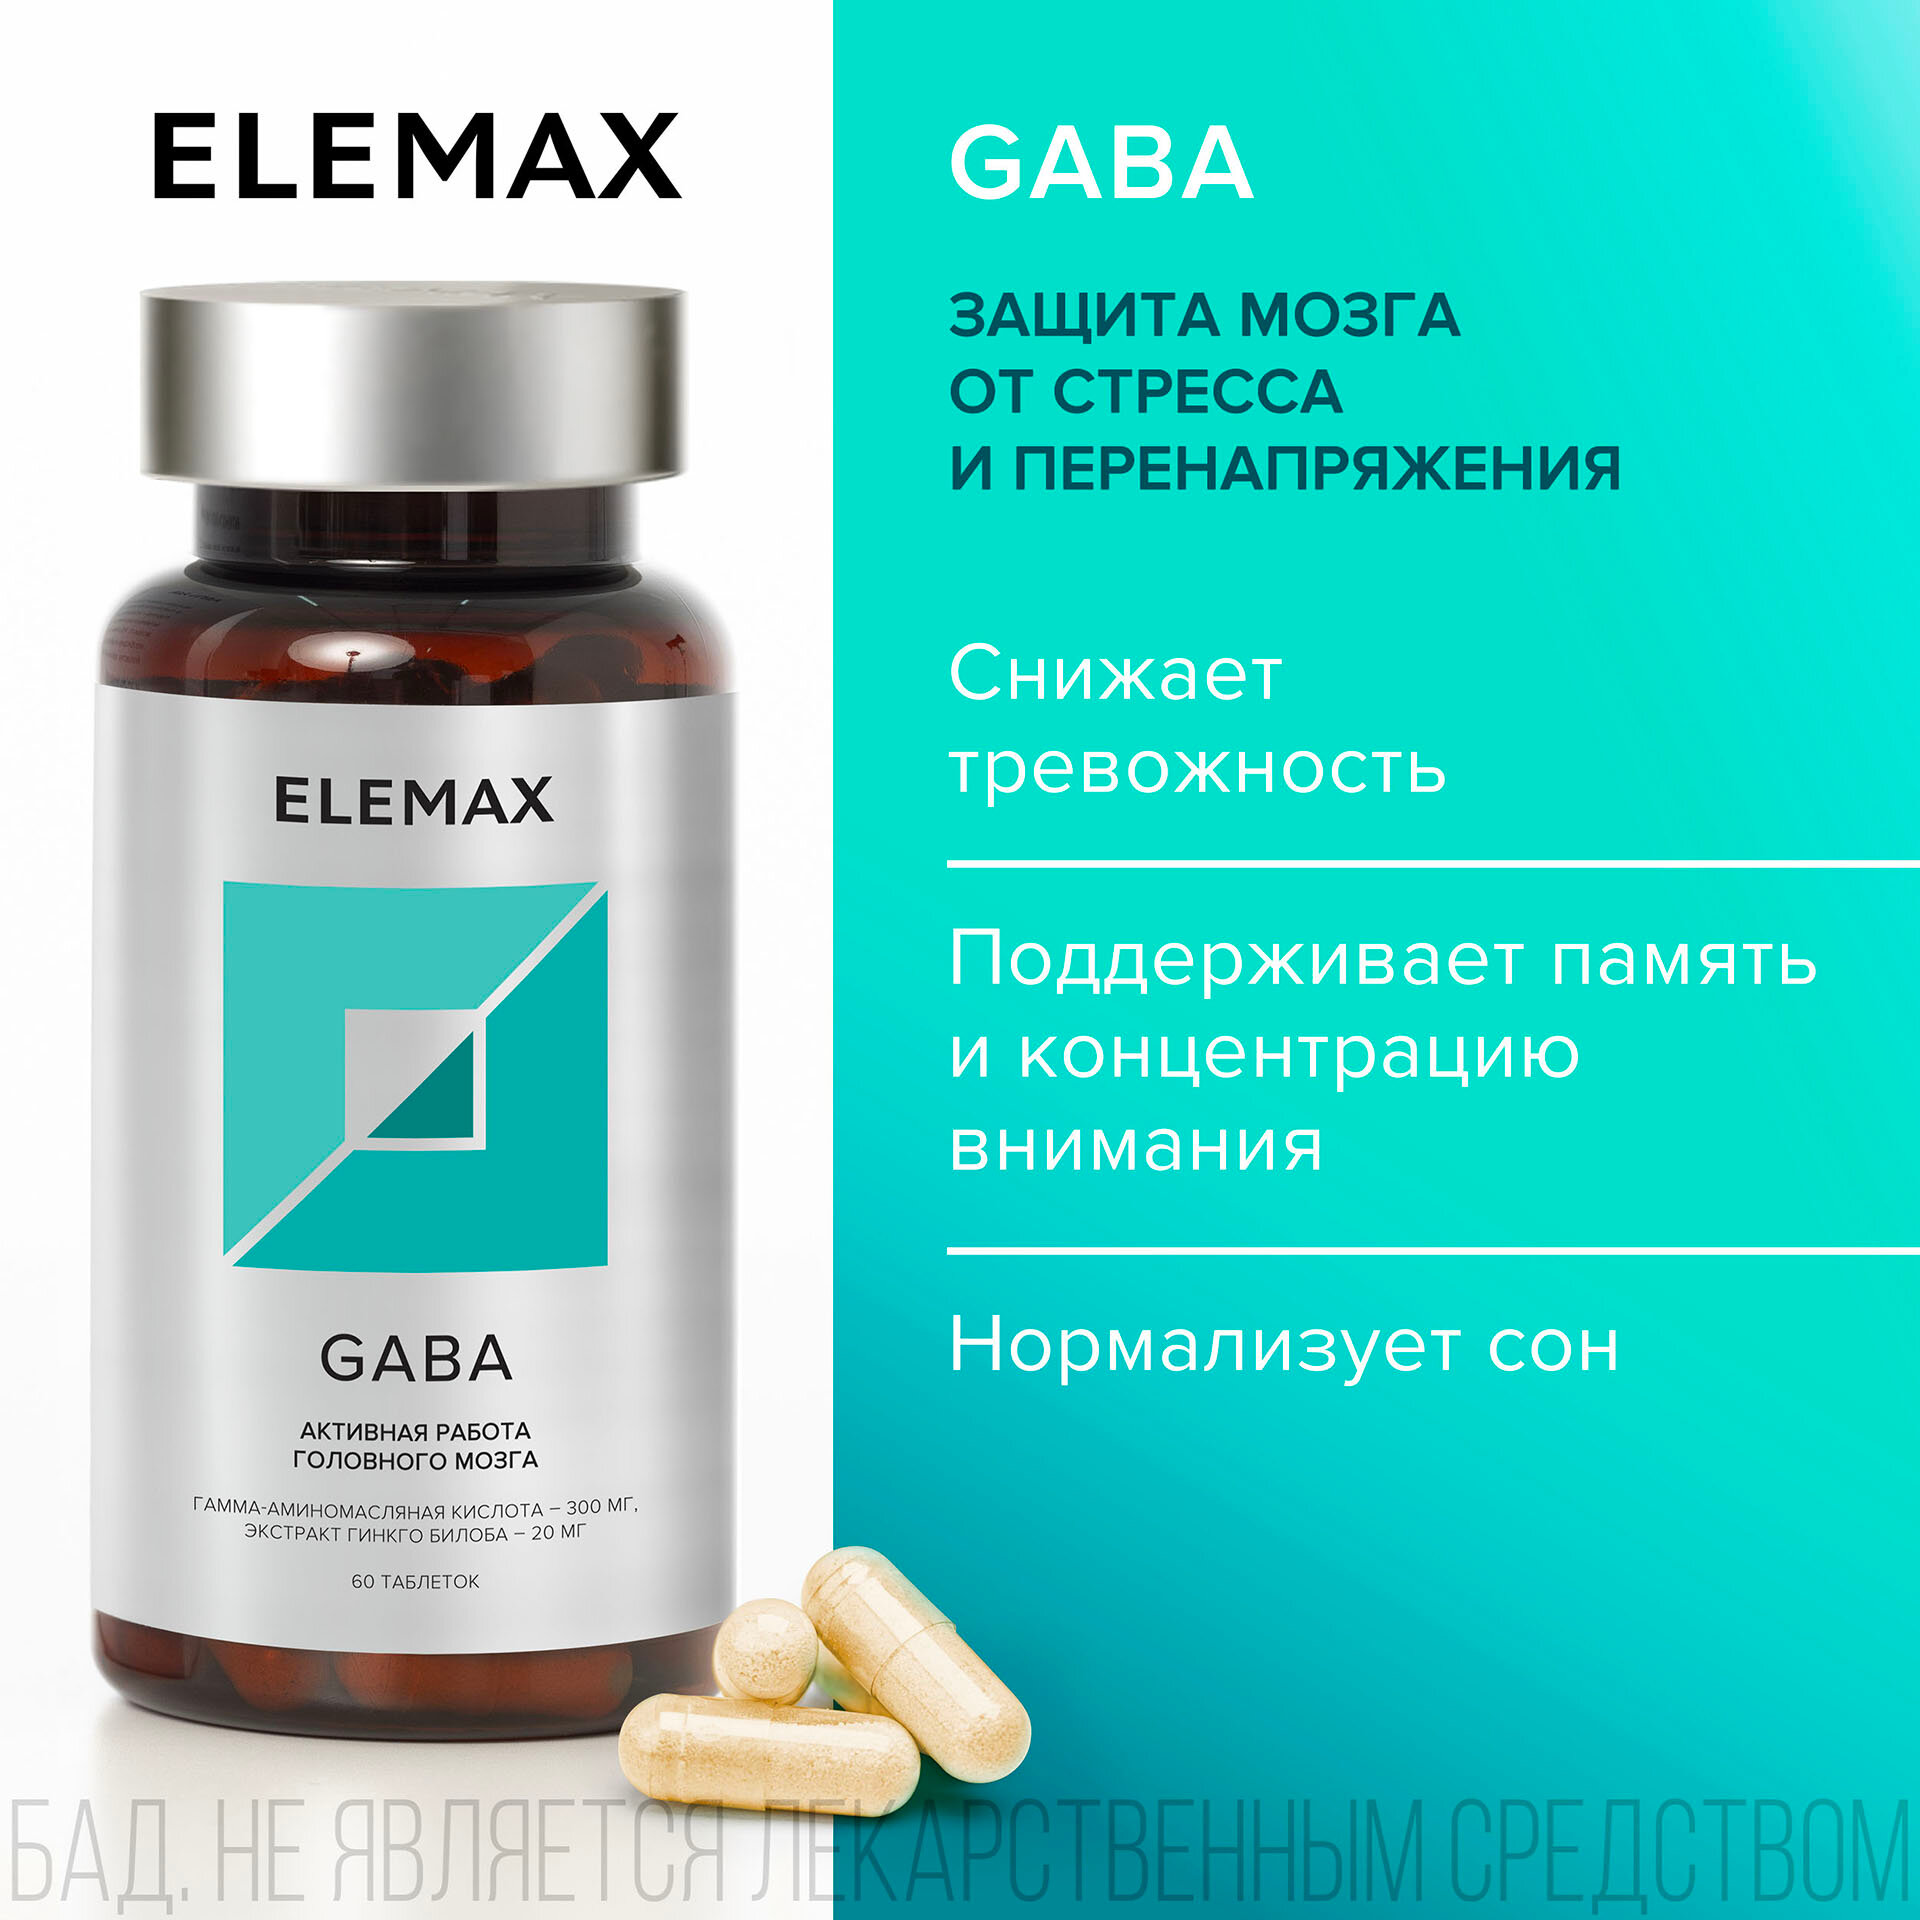 Гамма-аминомасляная кислота + экстракт Гинкго билоба ELEMAX Gaba витамины для защиты мозга от стресса 60 капсул